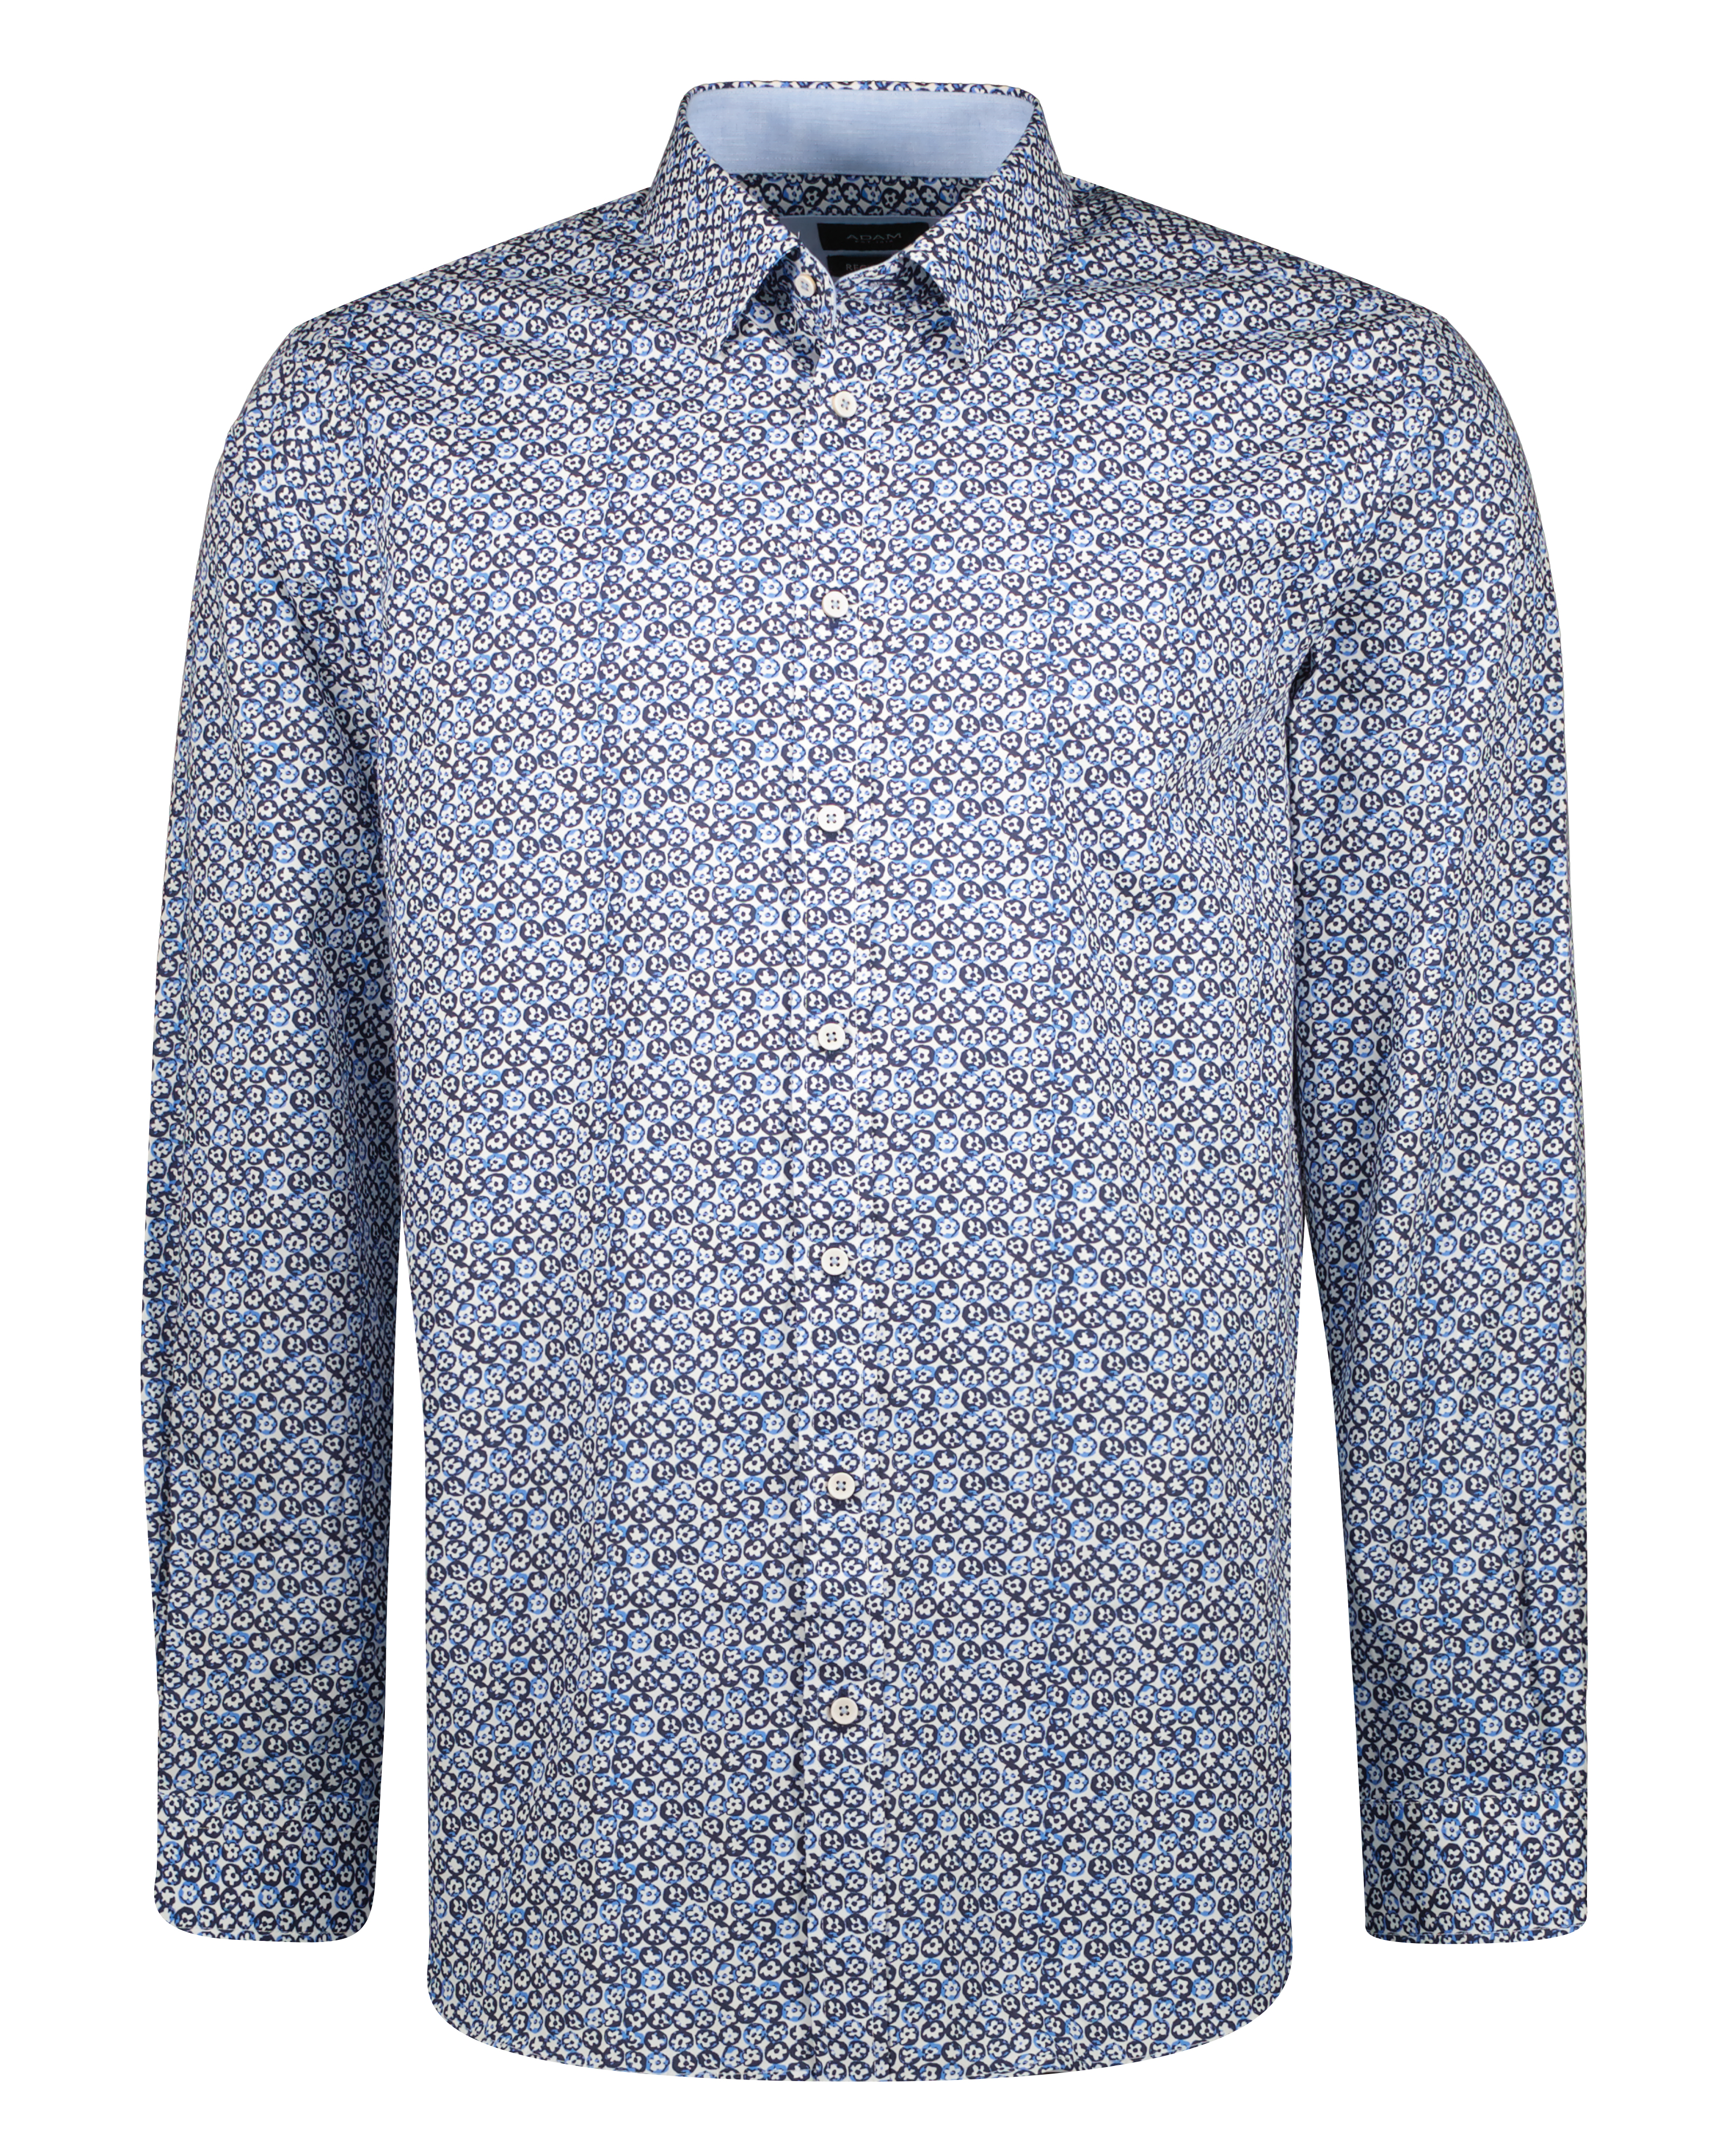 Adam est 1916 - Casual Overhemd met Print Blauw - M - Heren